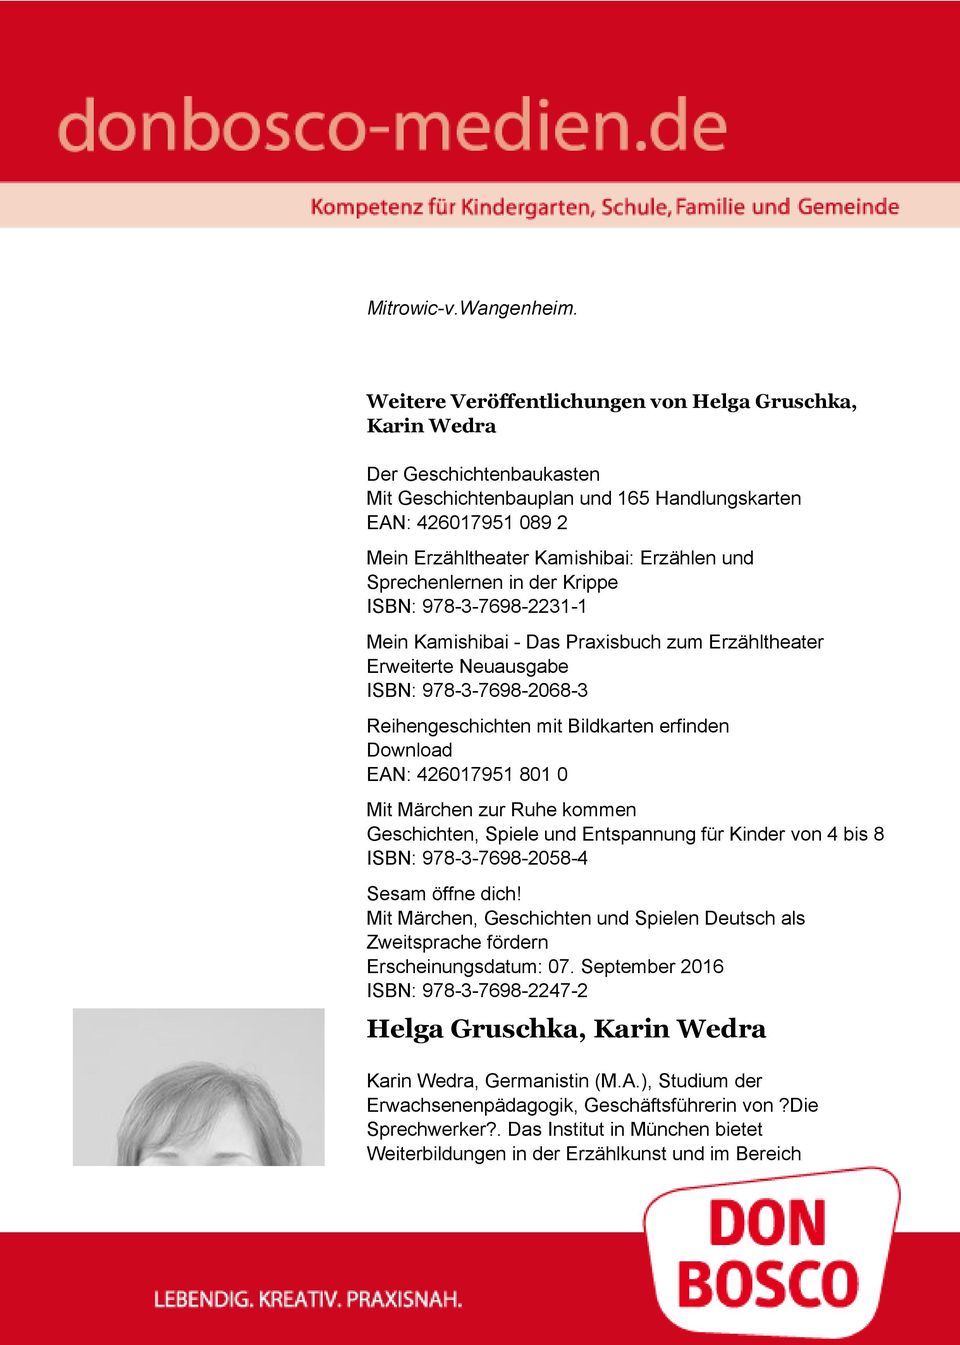 Sprechenlernen in der Krippe ISBN: 978-3-7698-2231-1 Mein Kamishibai - Das Praxisbuch zum Erzähltheater Erweiterte Neuausgabe ISBN: 978-3-7698-2068-3 Reihengeschichten mit Bildkarten erfinden